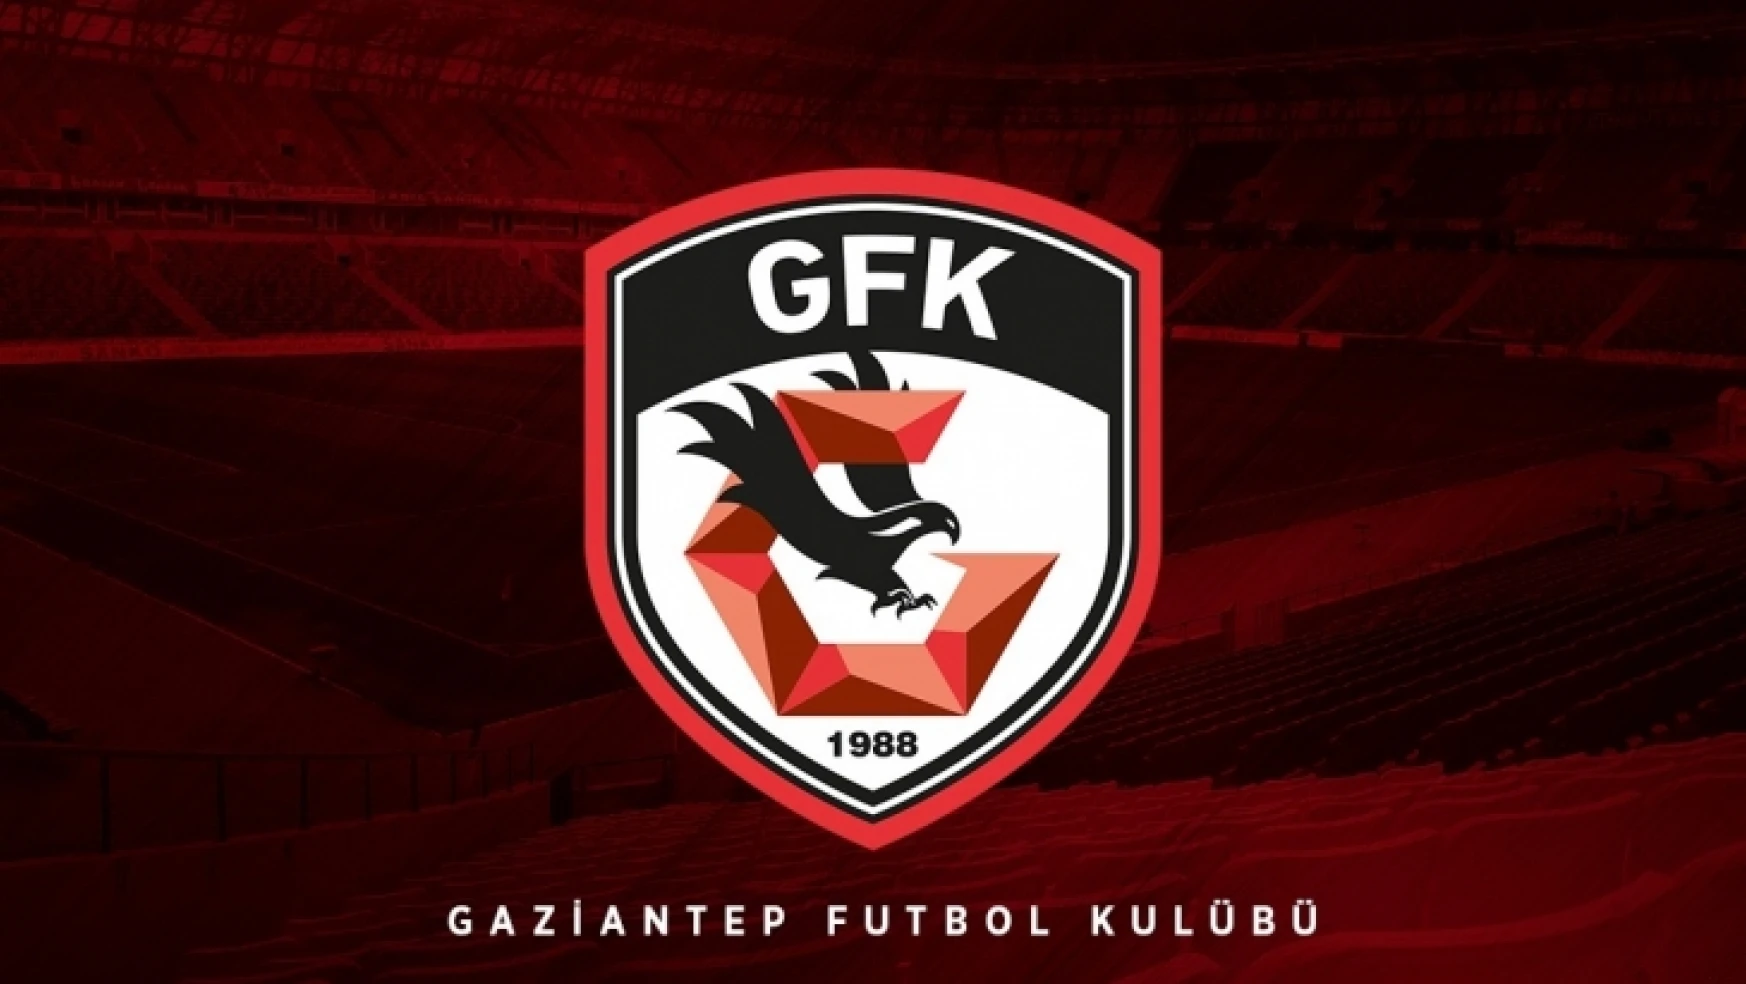 Gaziantep Futbol Kulübünden Açıklama